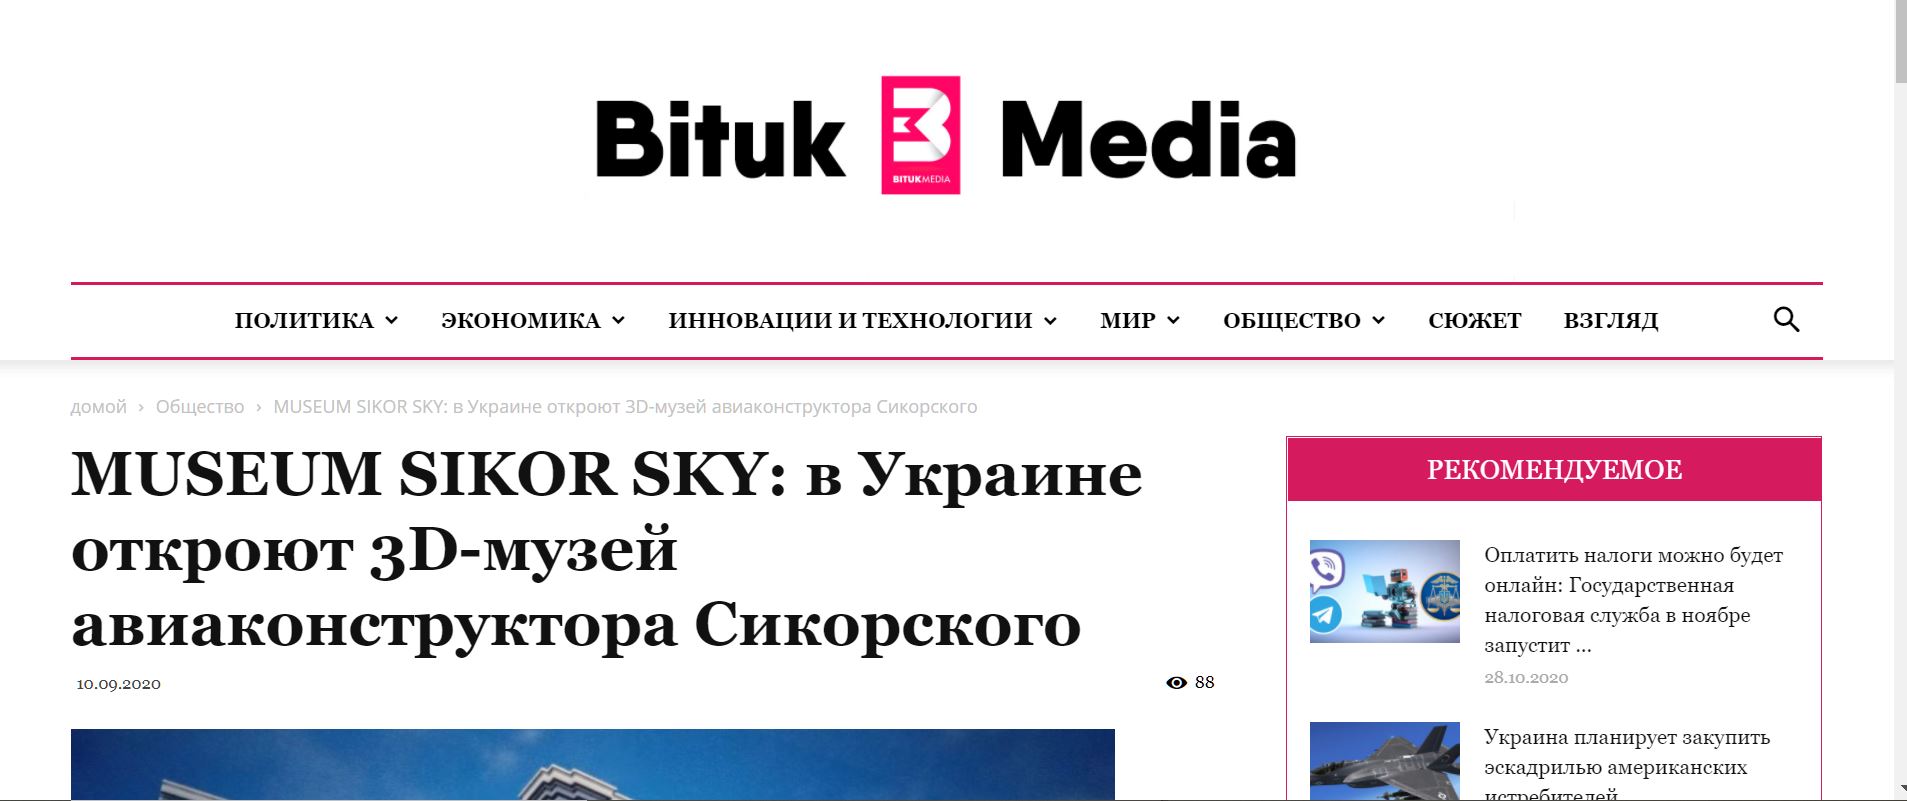 MUSEUM SIKOR SKY: в Украине откроют 3D-музей авиаконструктора Сикорского